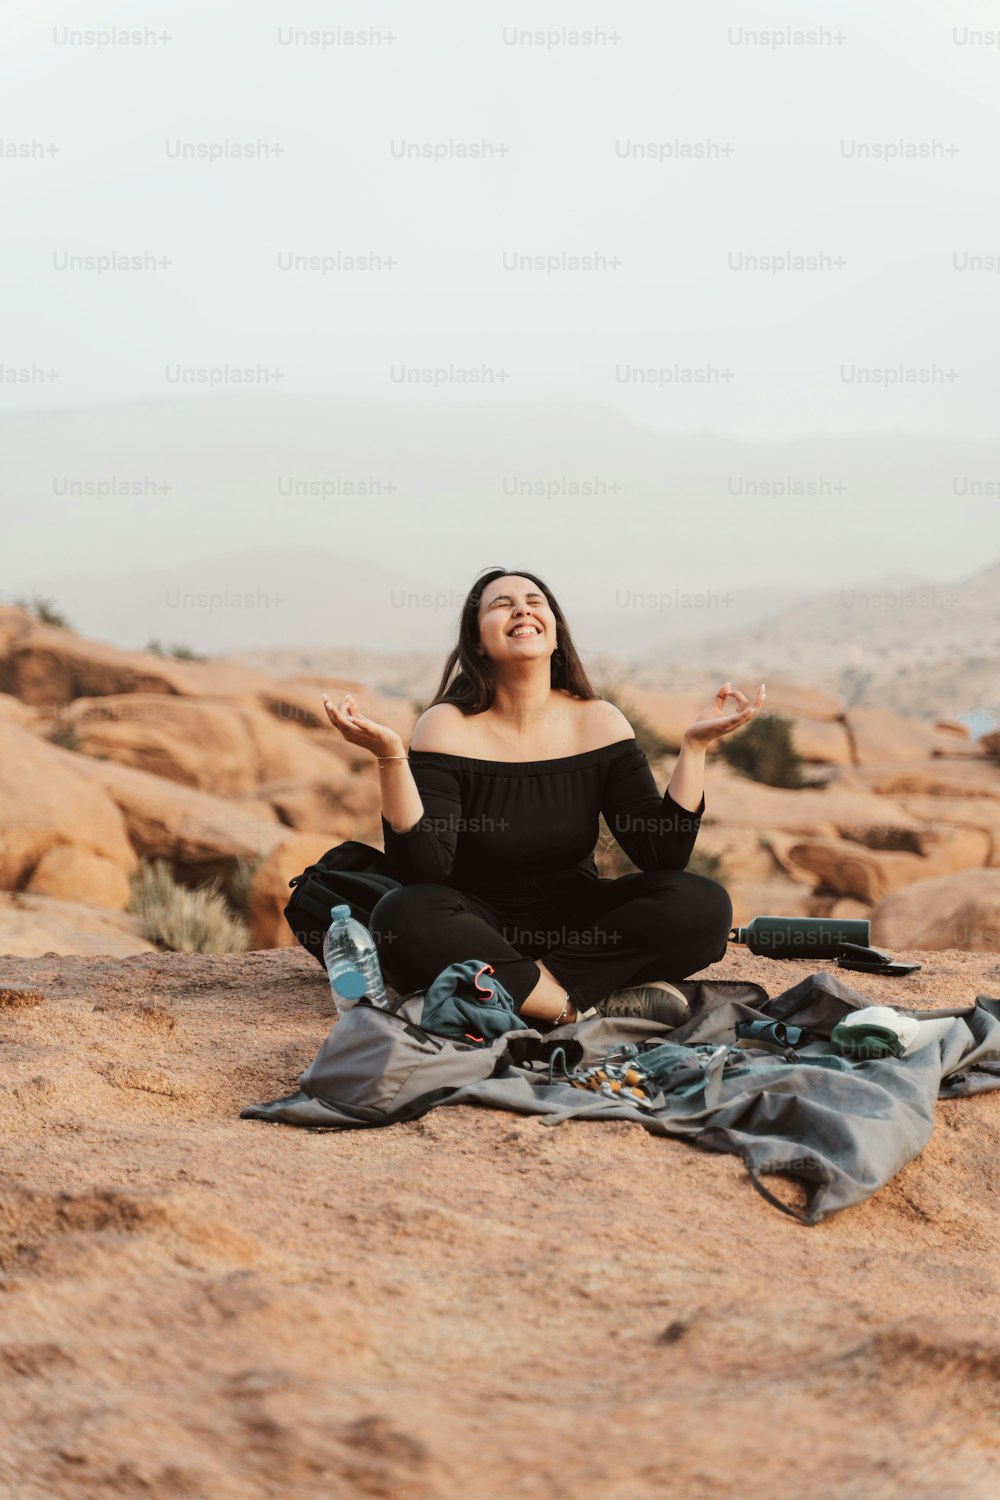 Une femme en haut noir est assise sur une couverture dans le désert